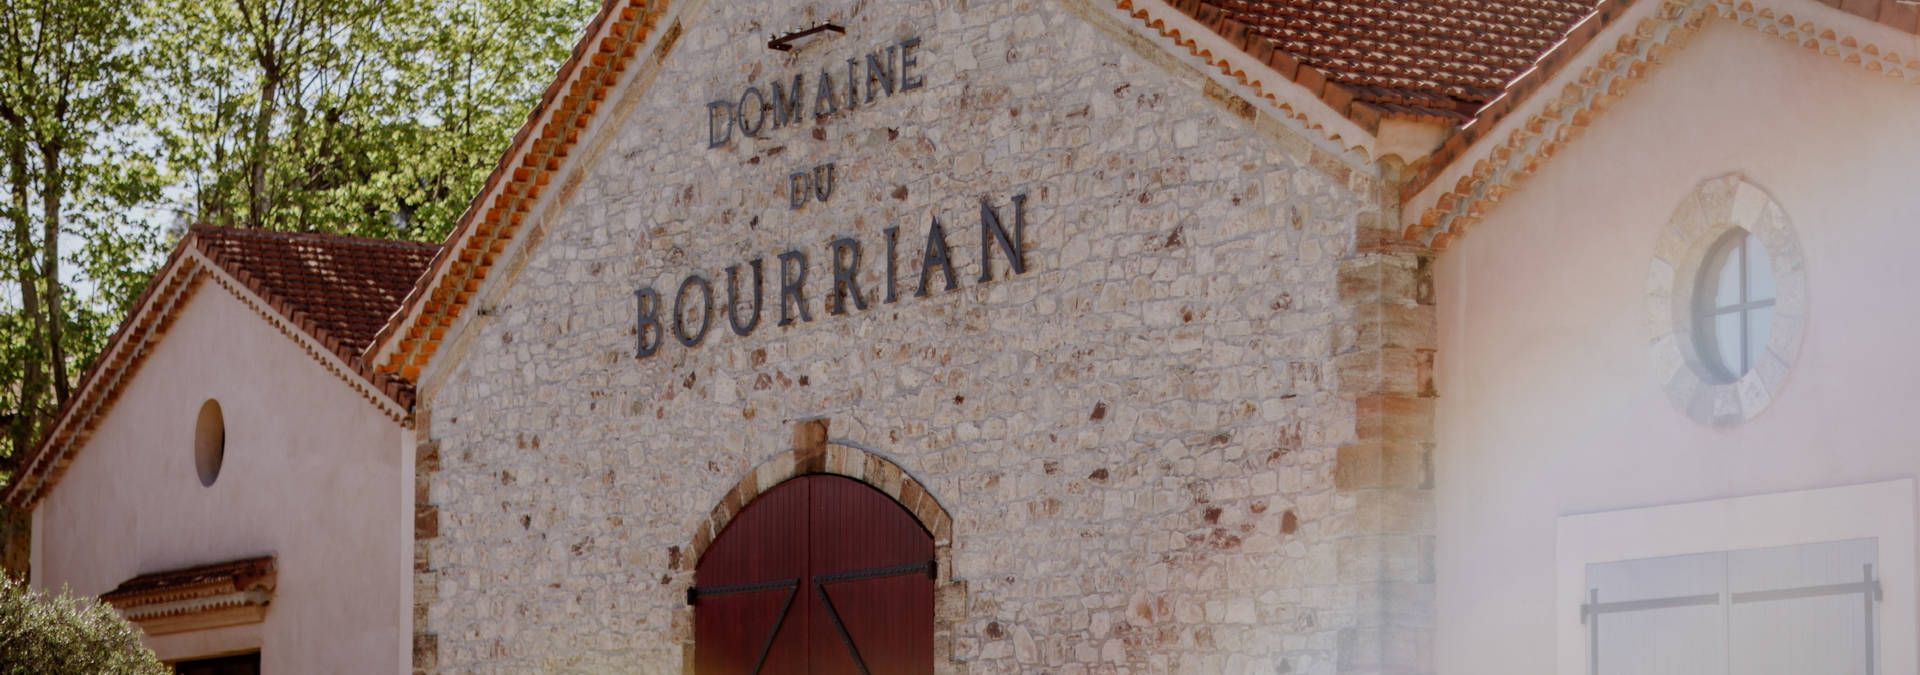 Domaine du Bourrian - Rue des Vignerons